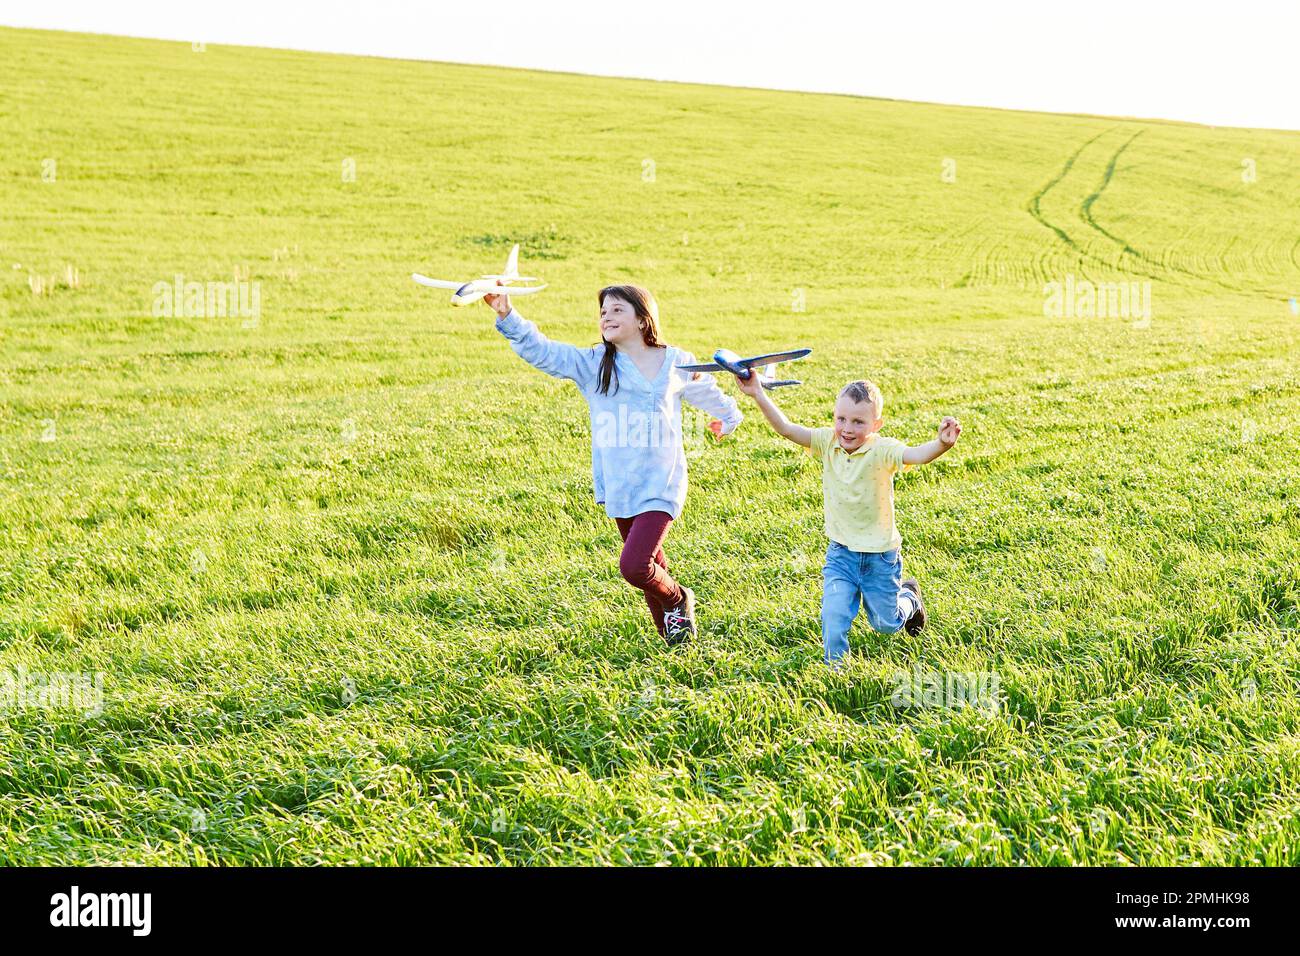 Il ragazzo e la ragazza che corrono che tengono due aeroplani gialli e blu giocattolo nel campo durante la giornata estiva di sole Foto Stock